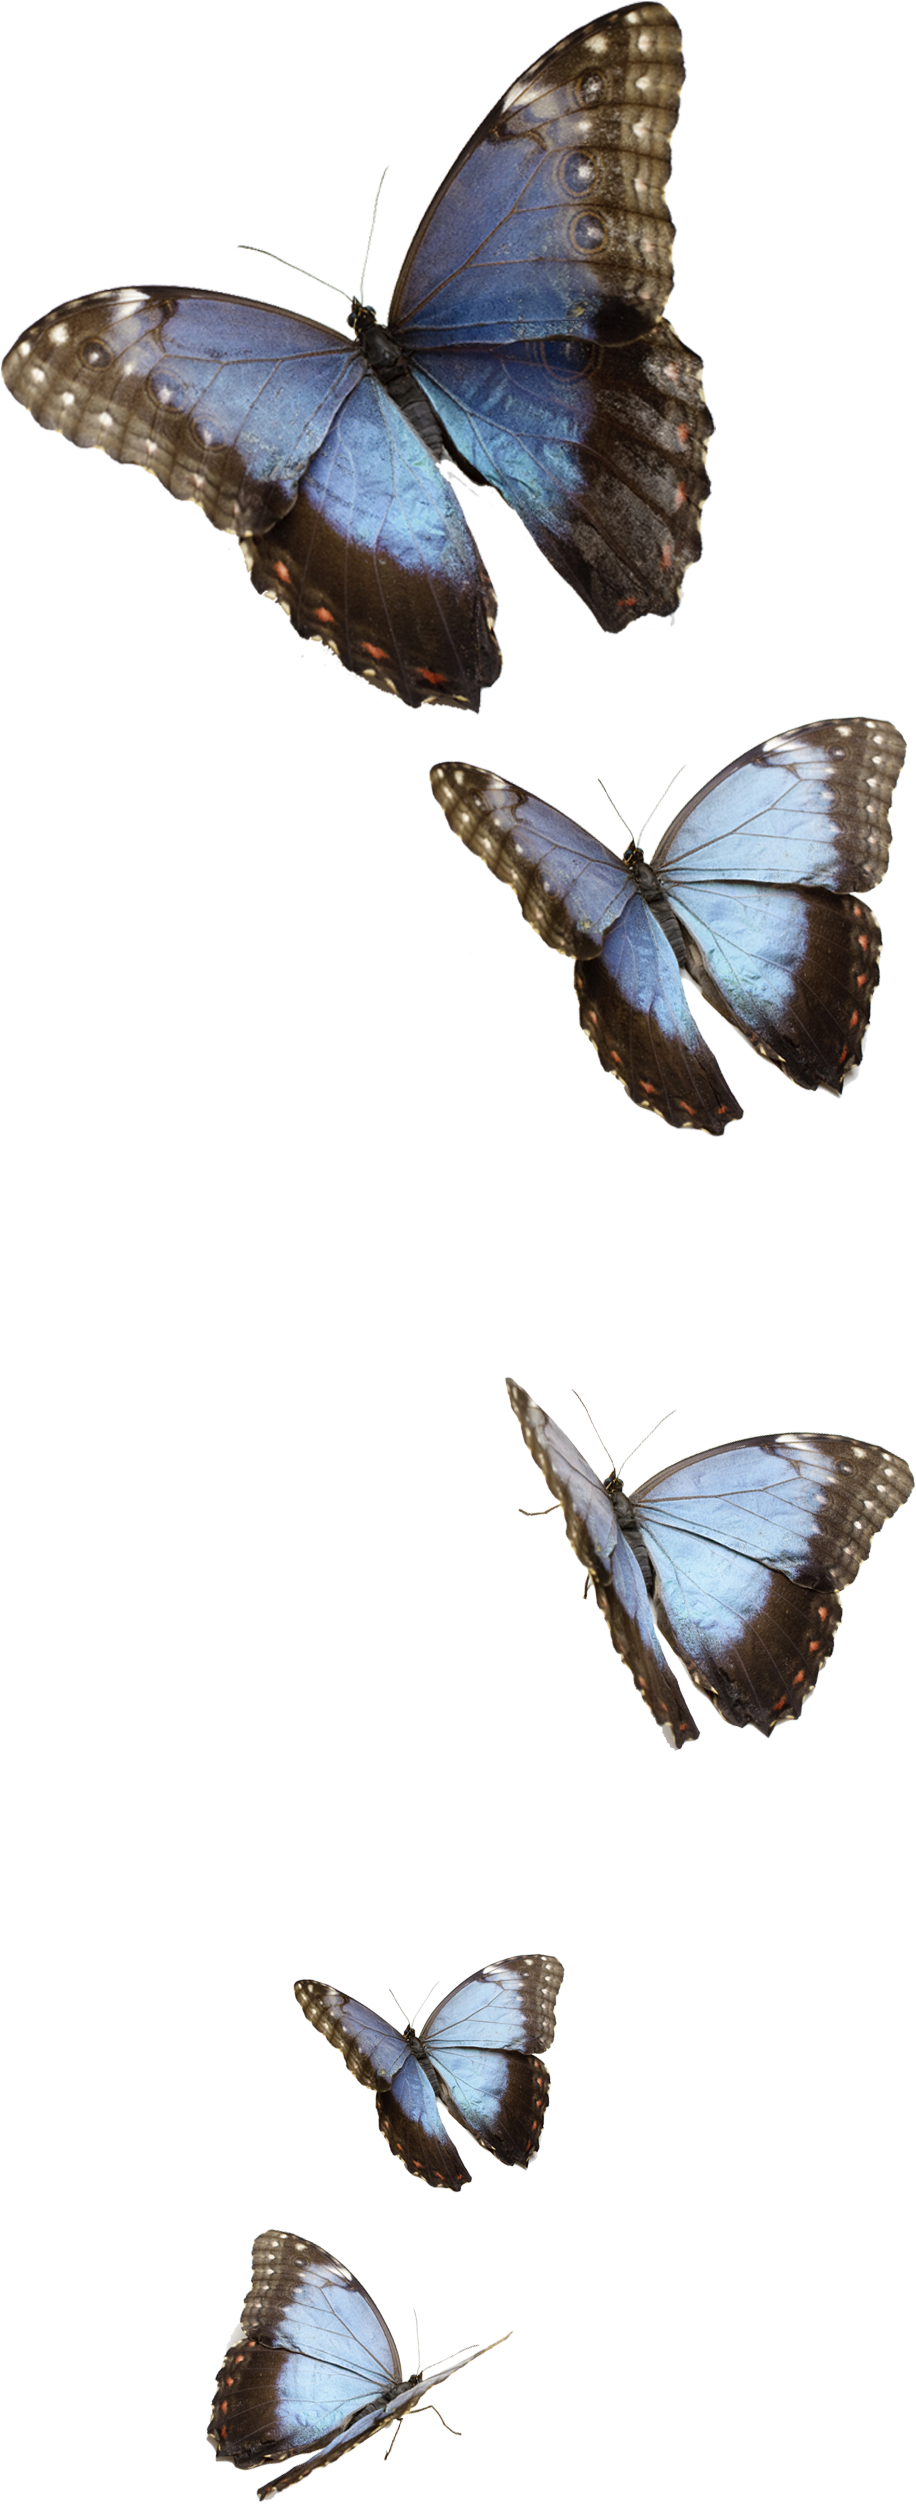 Immagine Trasparente PNG di farfalle blu volante